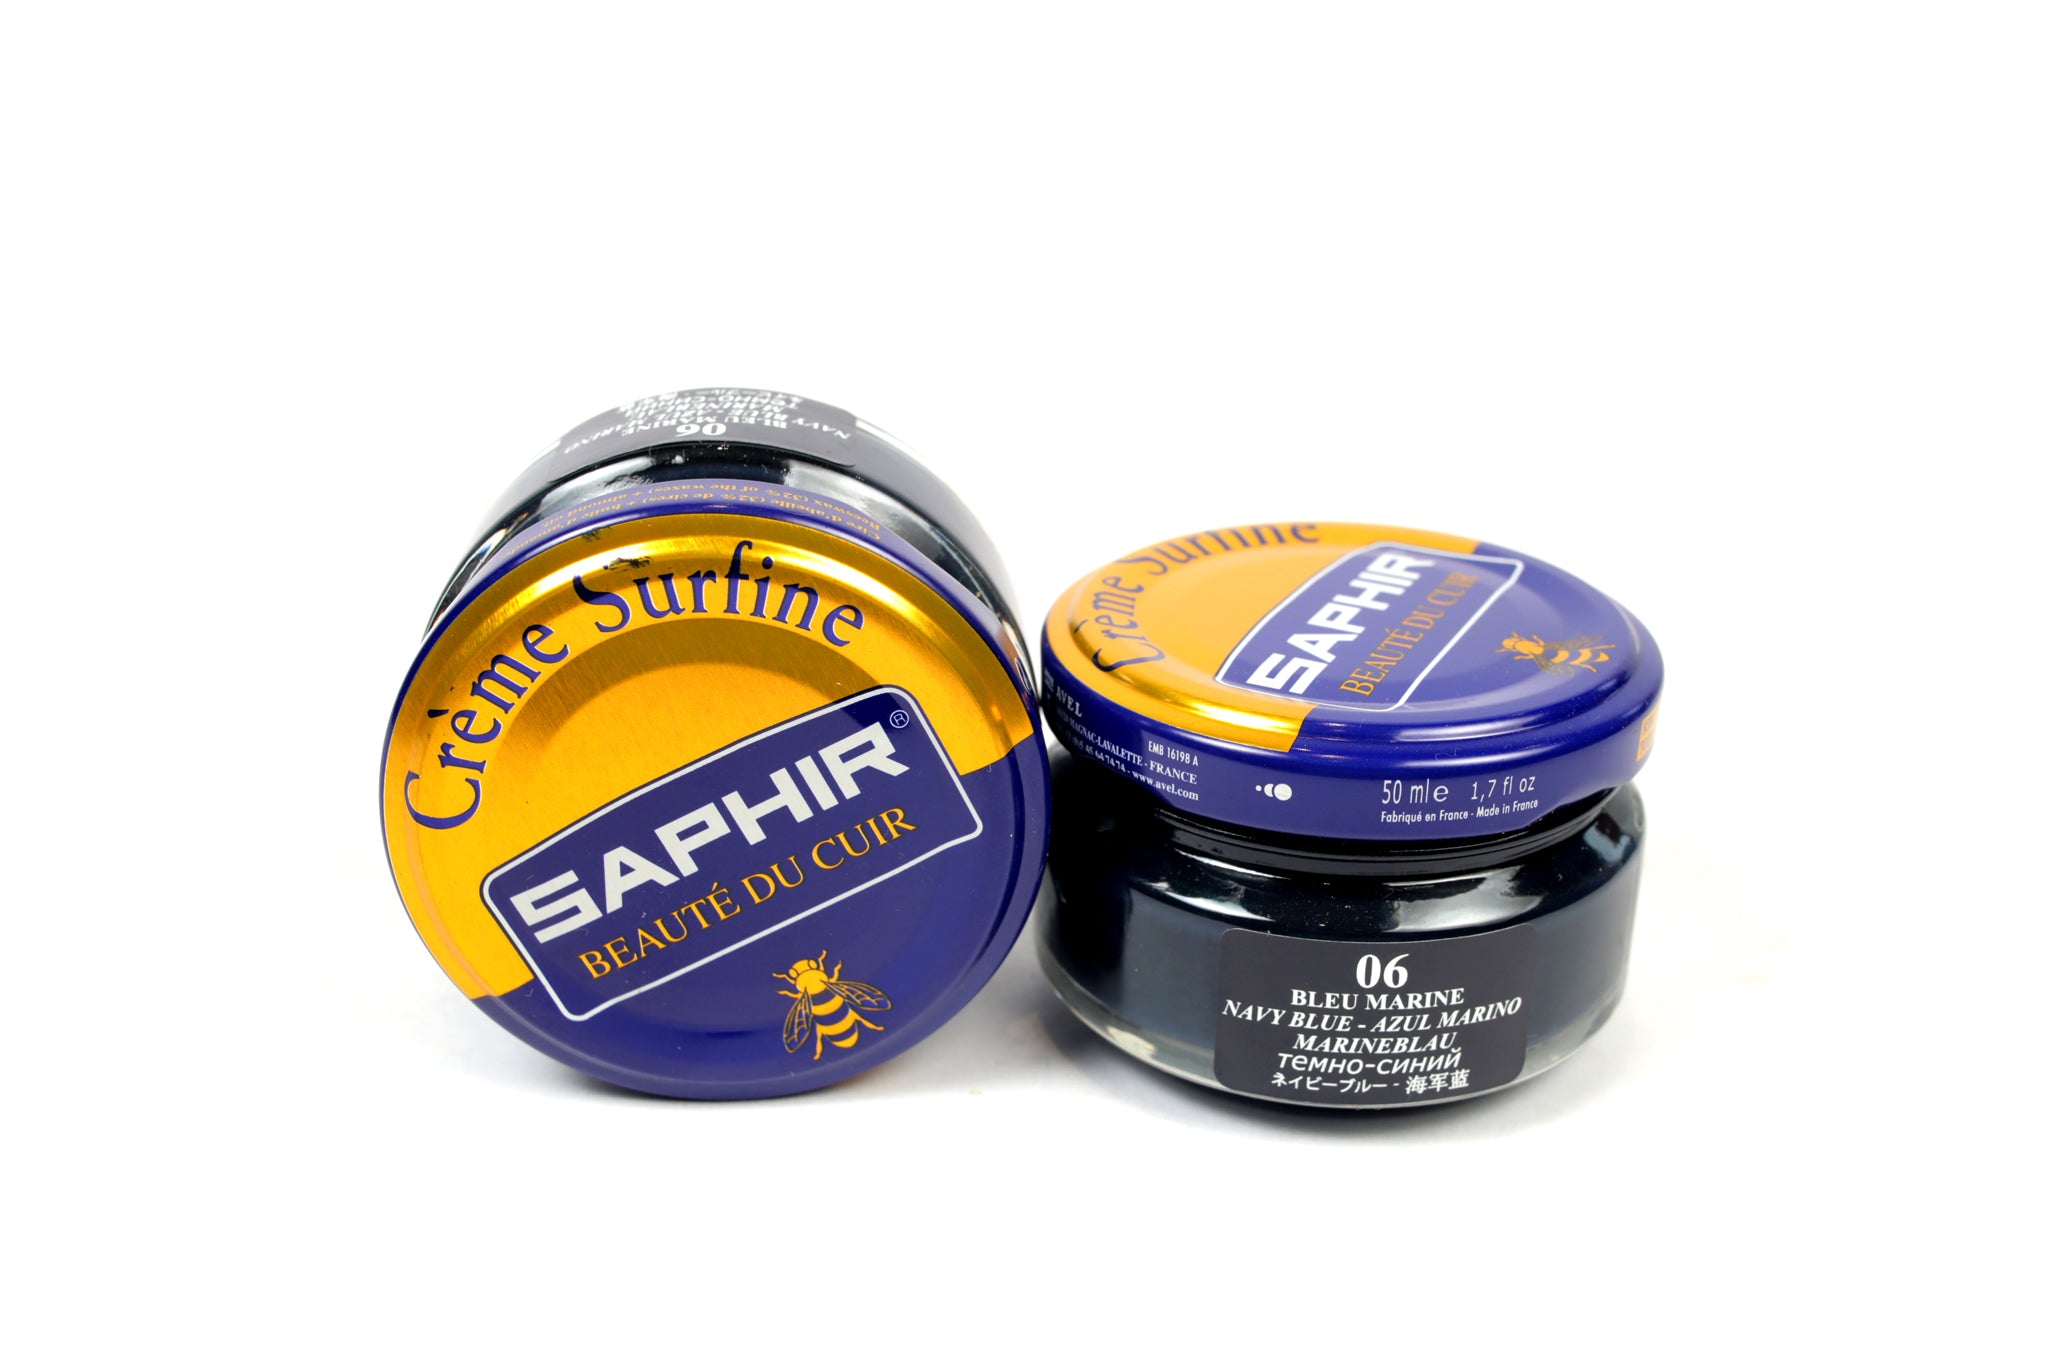 Saphir Creme Surfine 50 ml